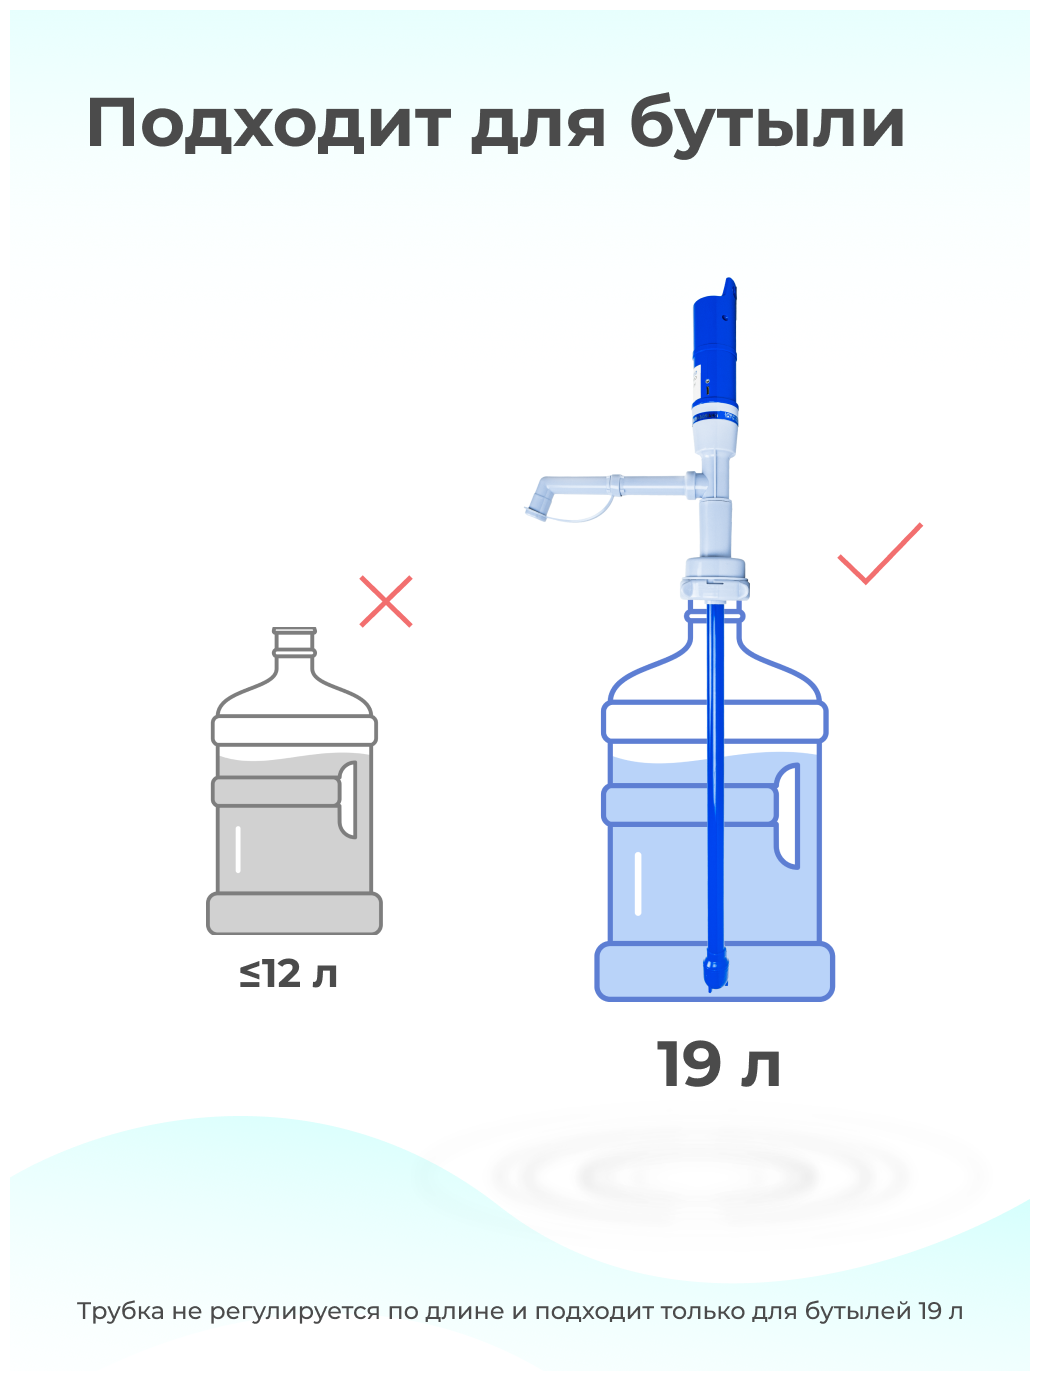 Помпа для воды электрическая аккумуляторная, насос для бутылок 19 л автоматический LESOTO Electro, диспенсер для бутилированной воды автономный - фотография № 3